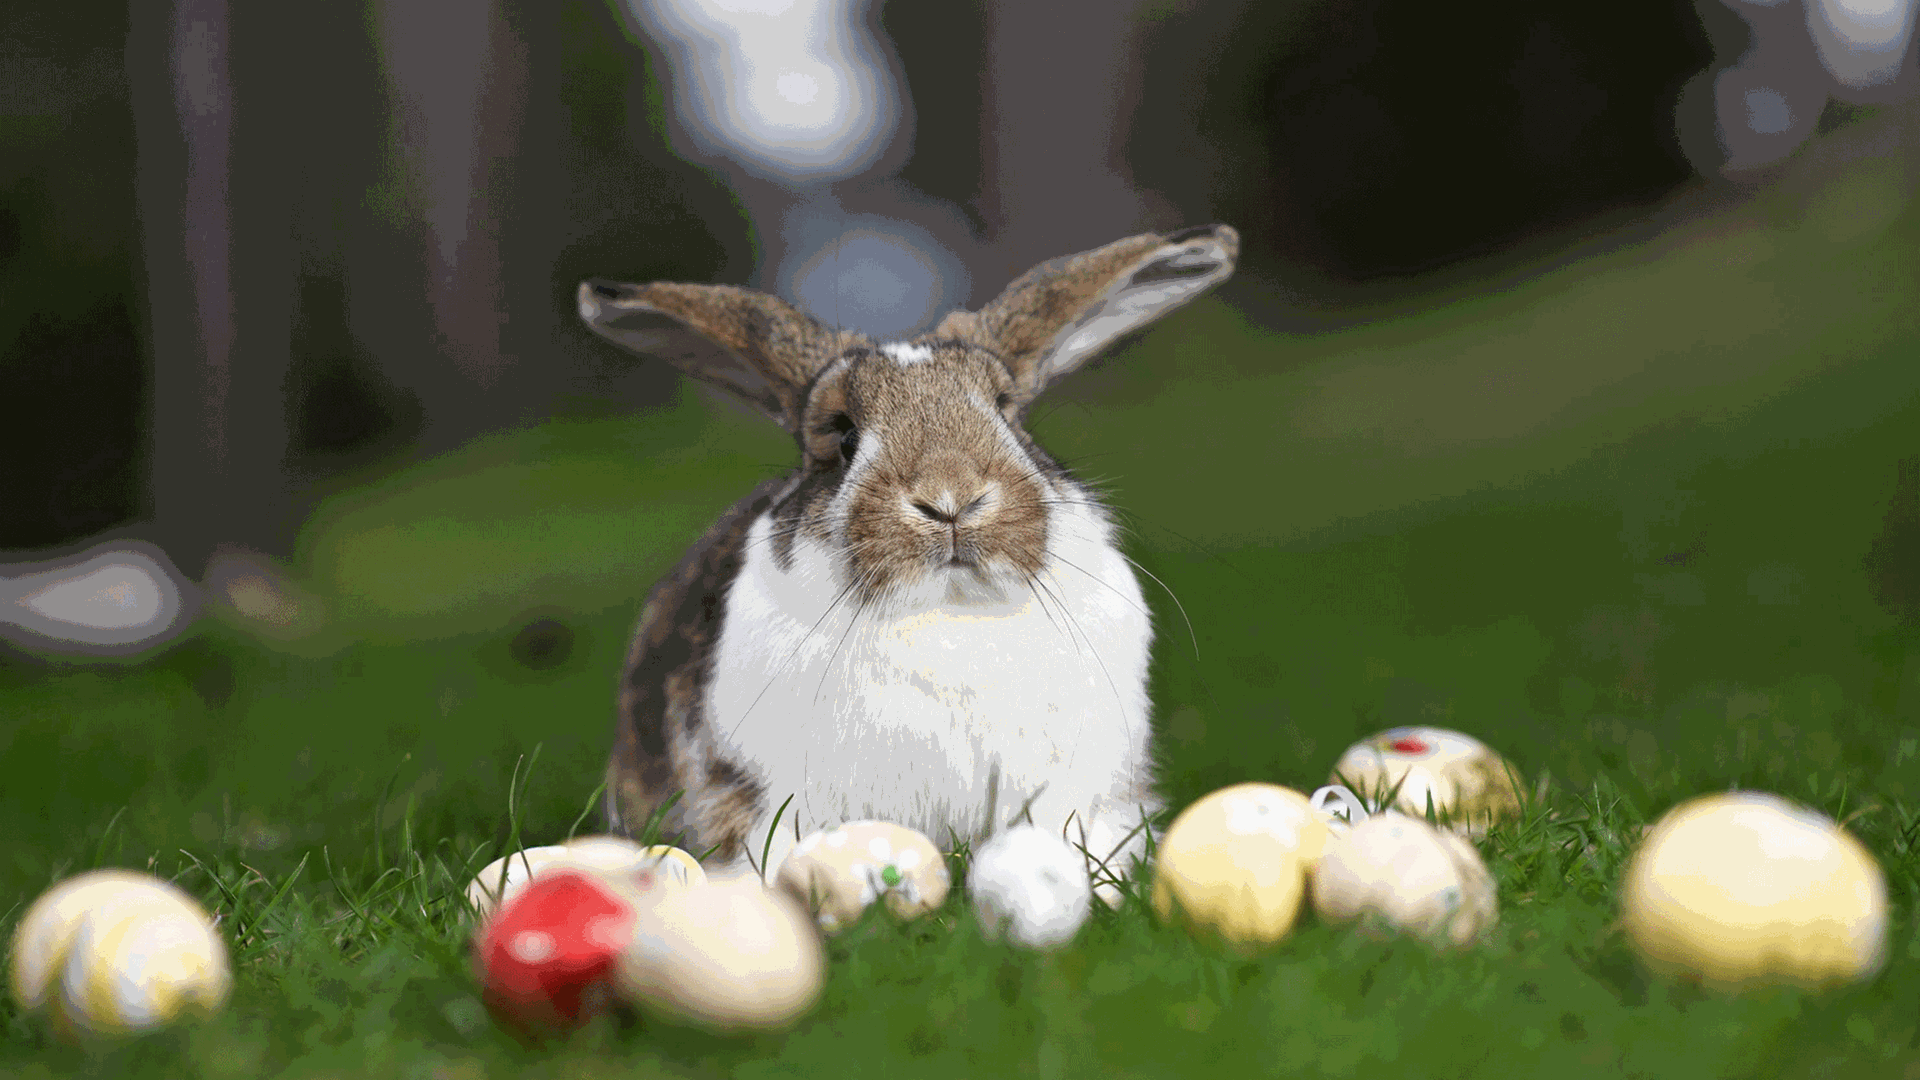 Ein Hase sitzt auf einer Wiese, vor ihm liegen angemalte Eier. In heidnischen Zeiten wurde seine Vermehrungsfreudigkeit geschätzt, heute ist er der Osterhase.